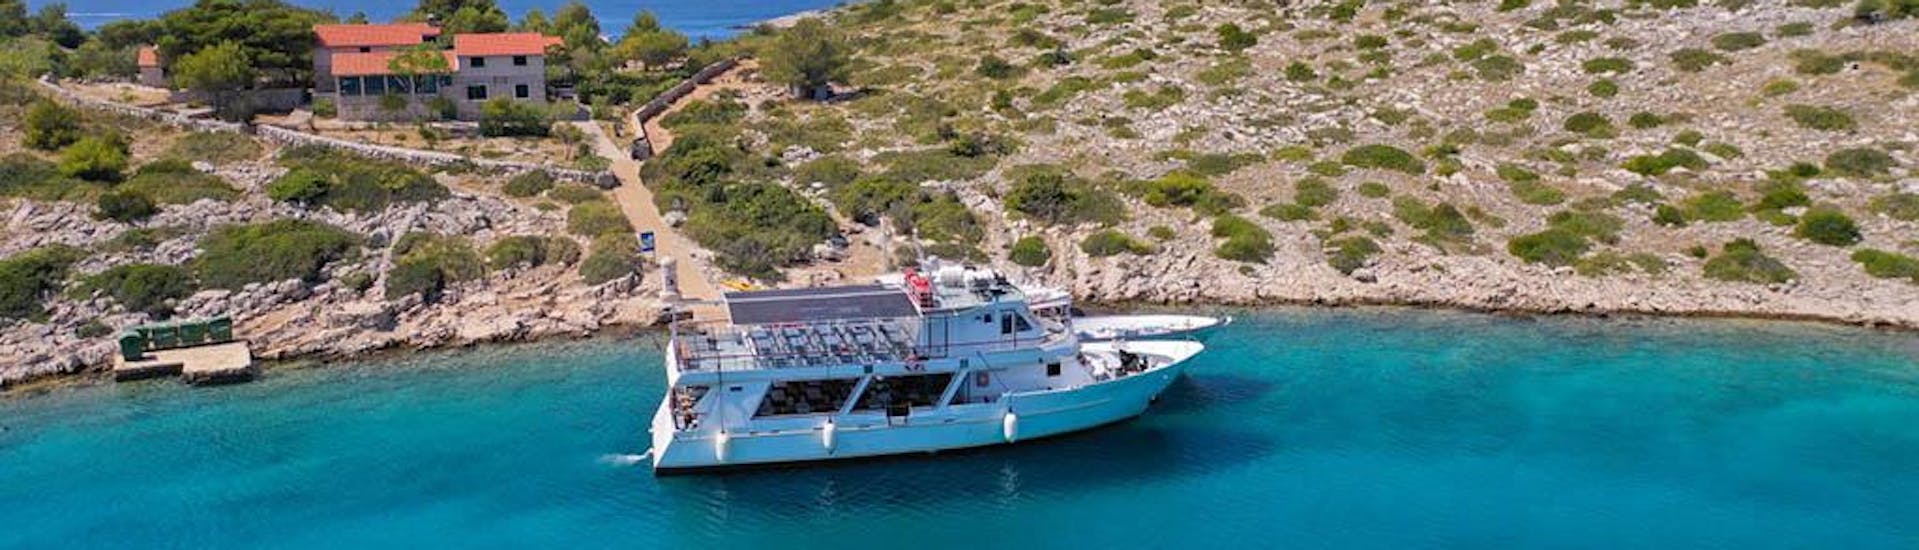 La barca di Maslina Tours Zadar in acqua durante un tour.